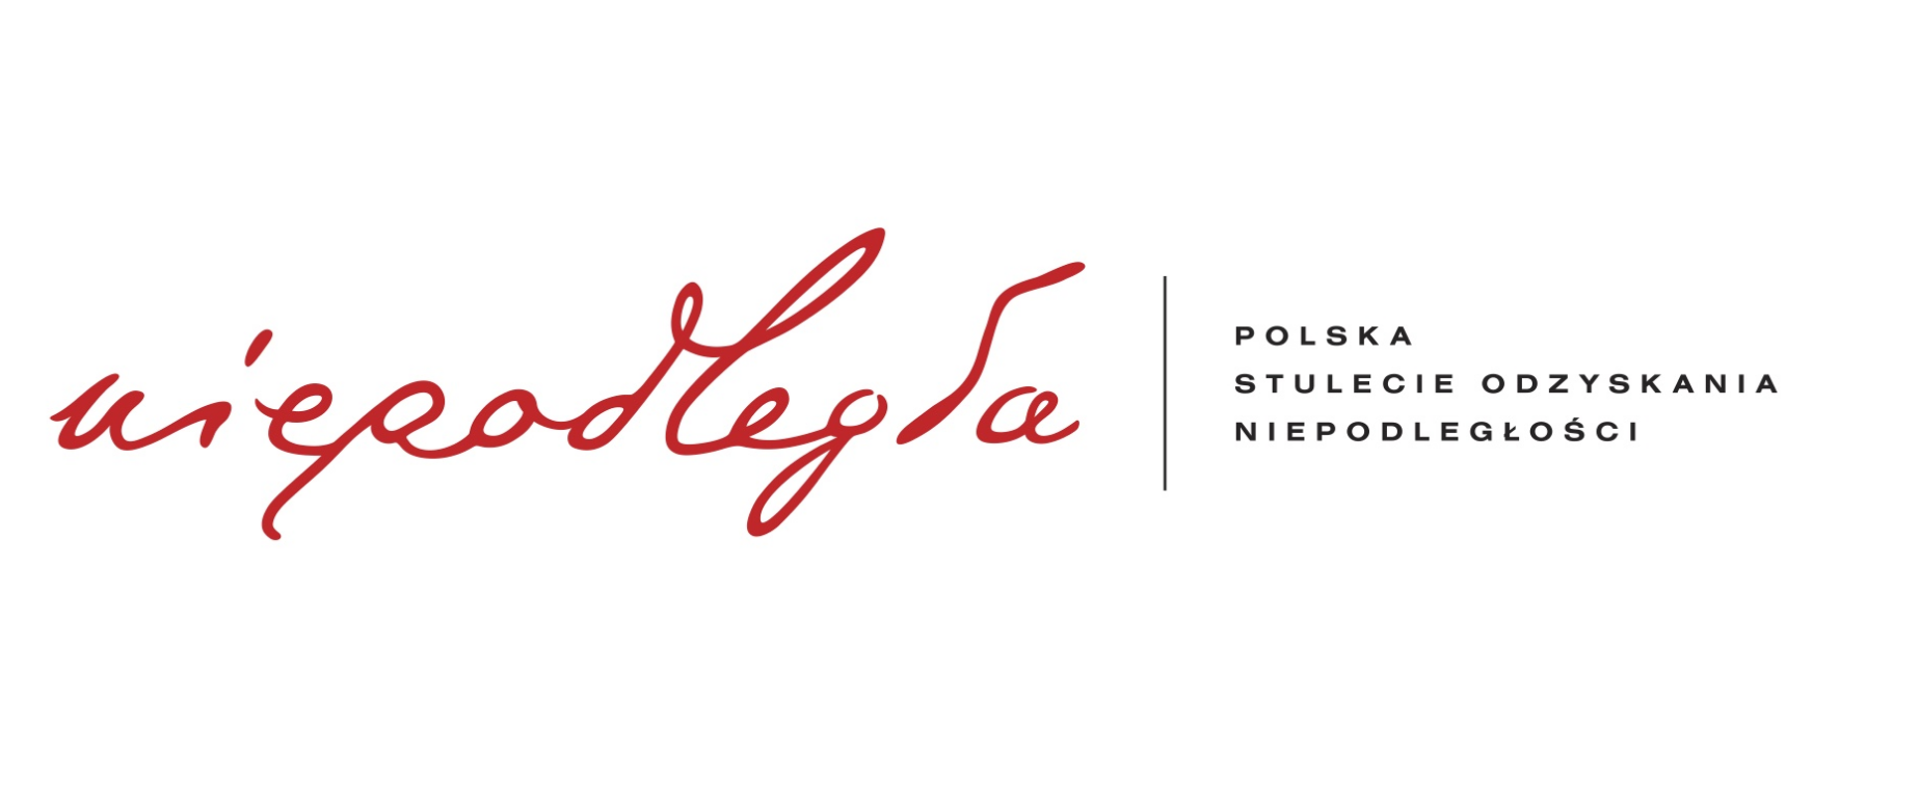 Baner z napisem na białym tle Niepodległa Polska Stulecie Odzyskania Niepodległości